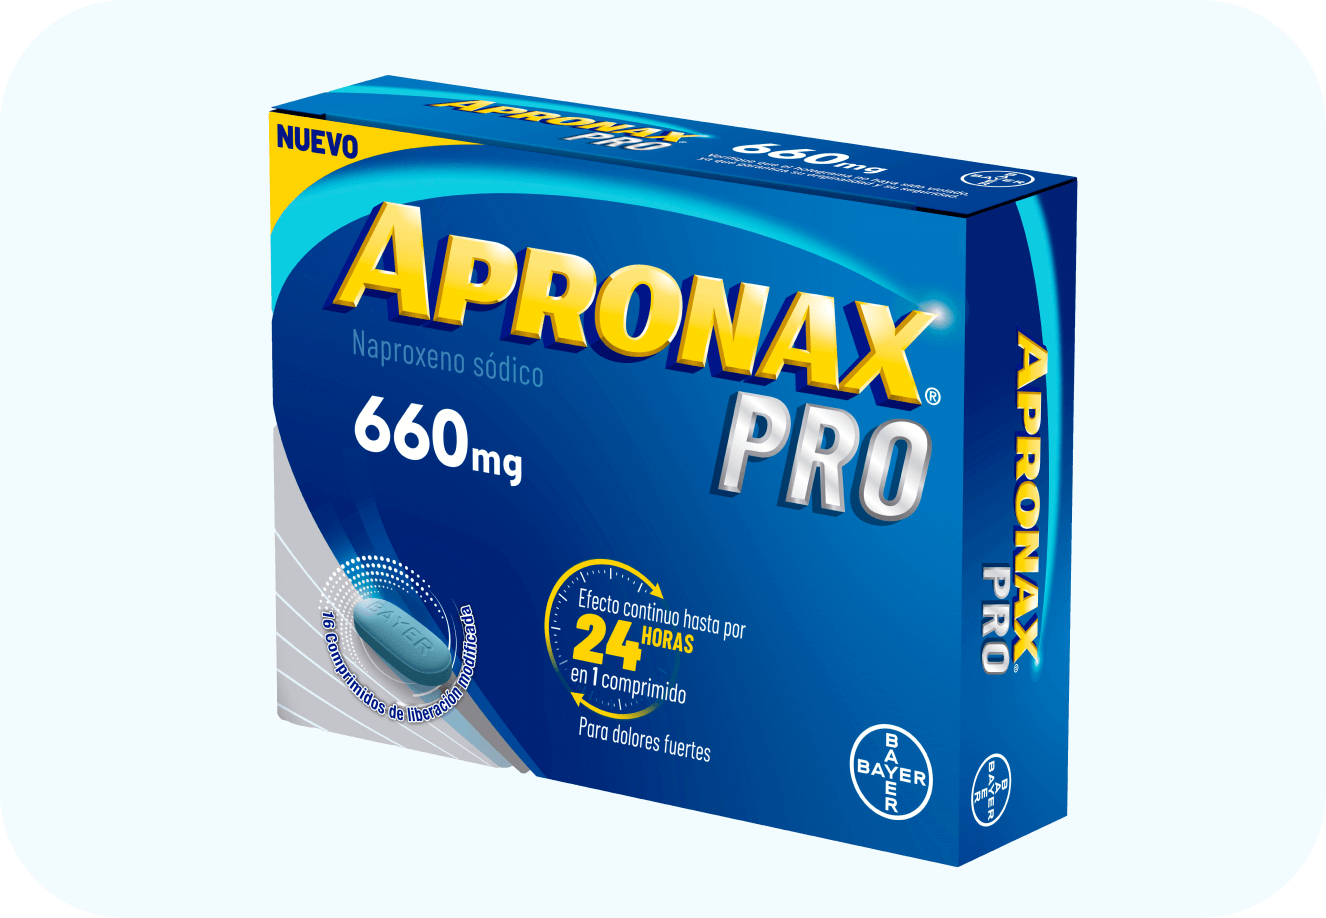 APRONAX® PRO